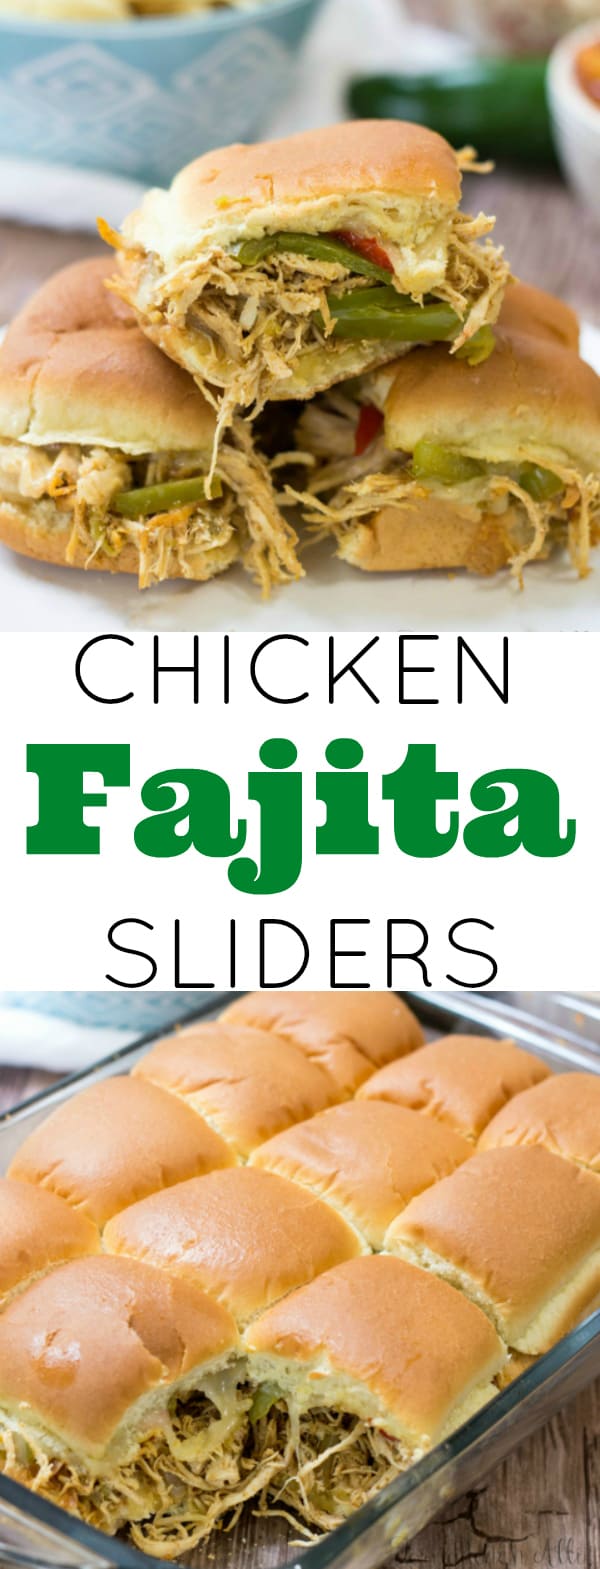 Chicken Fajita Sliders collage